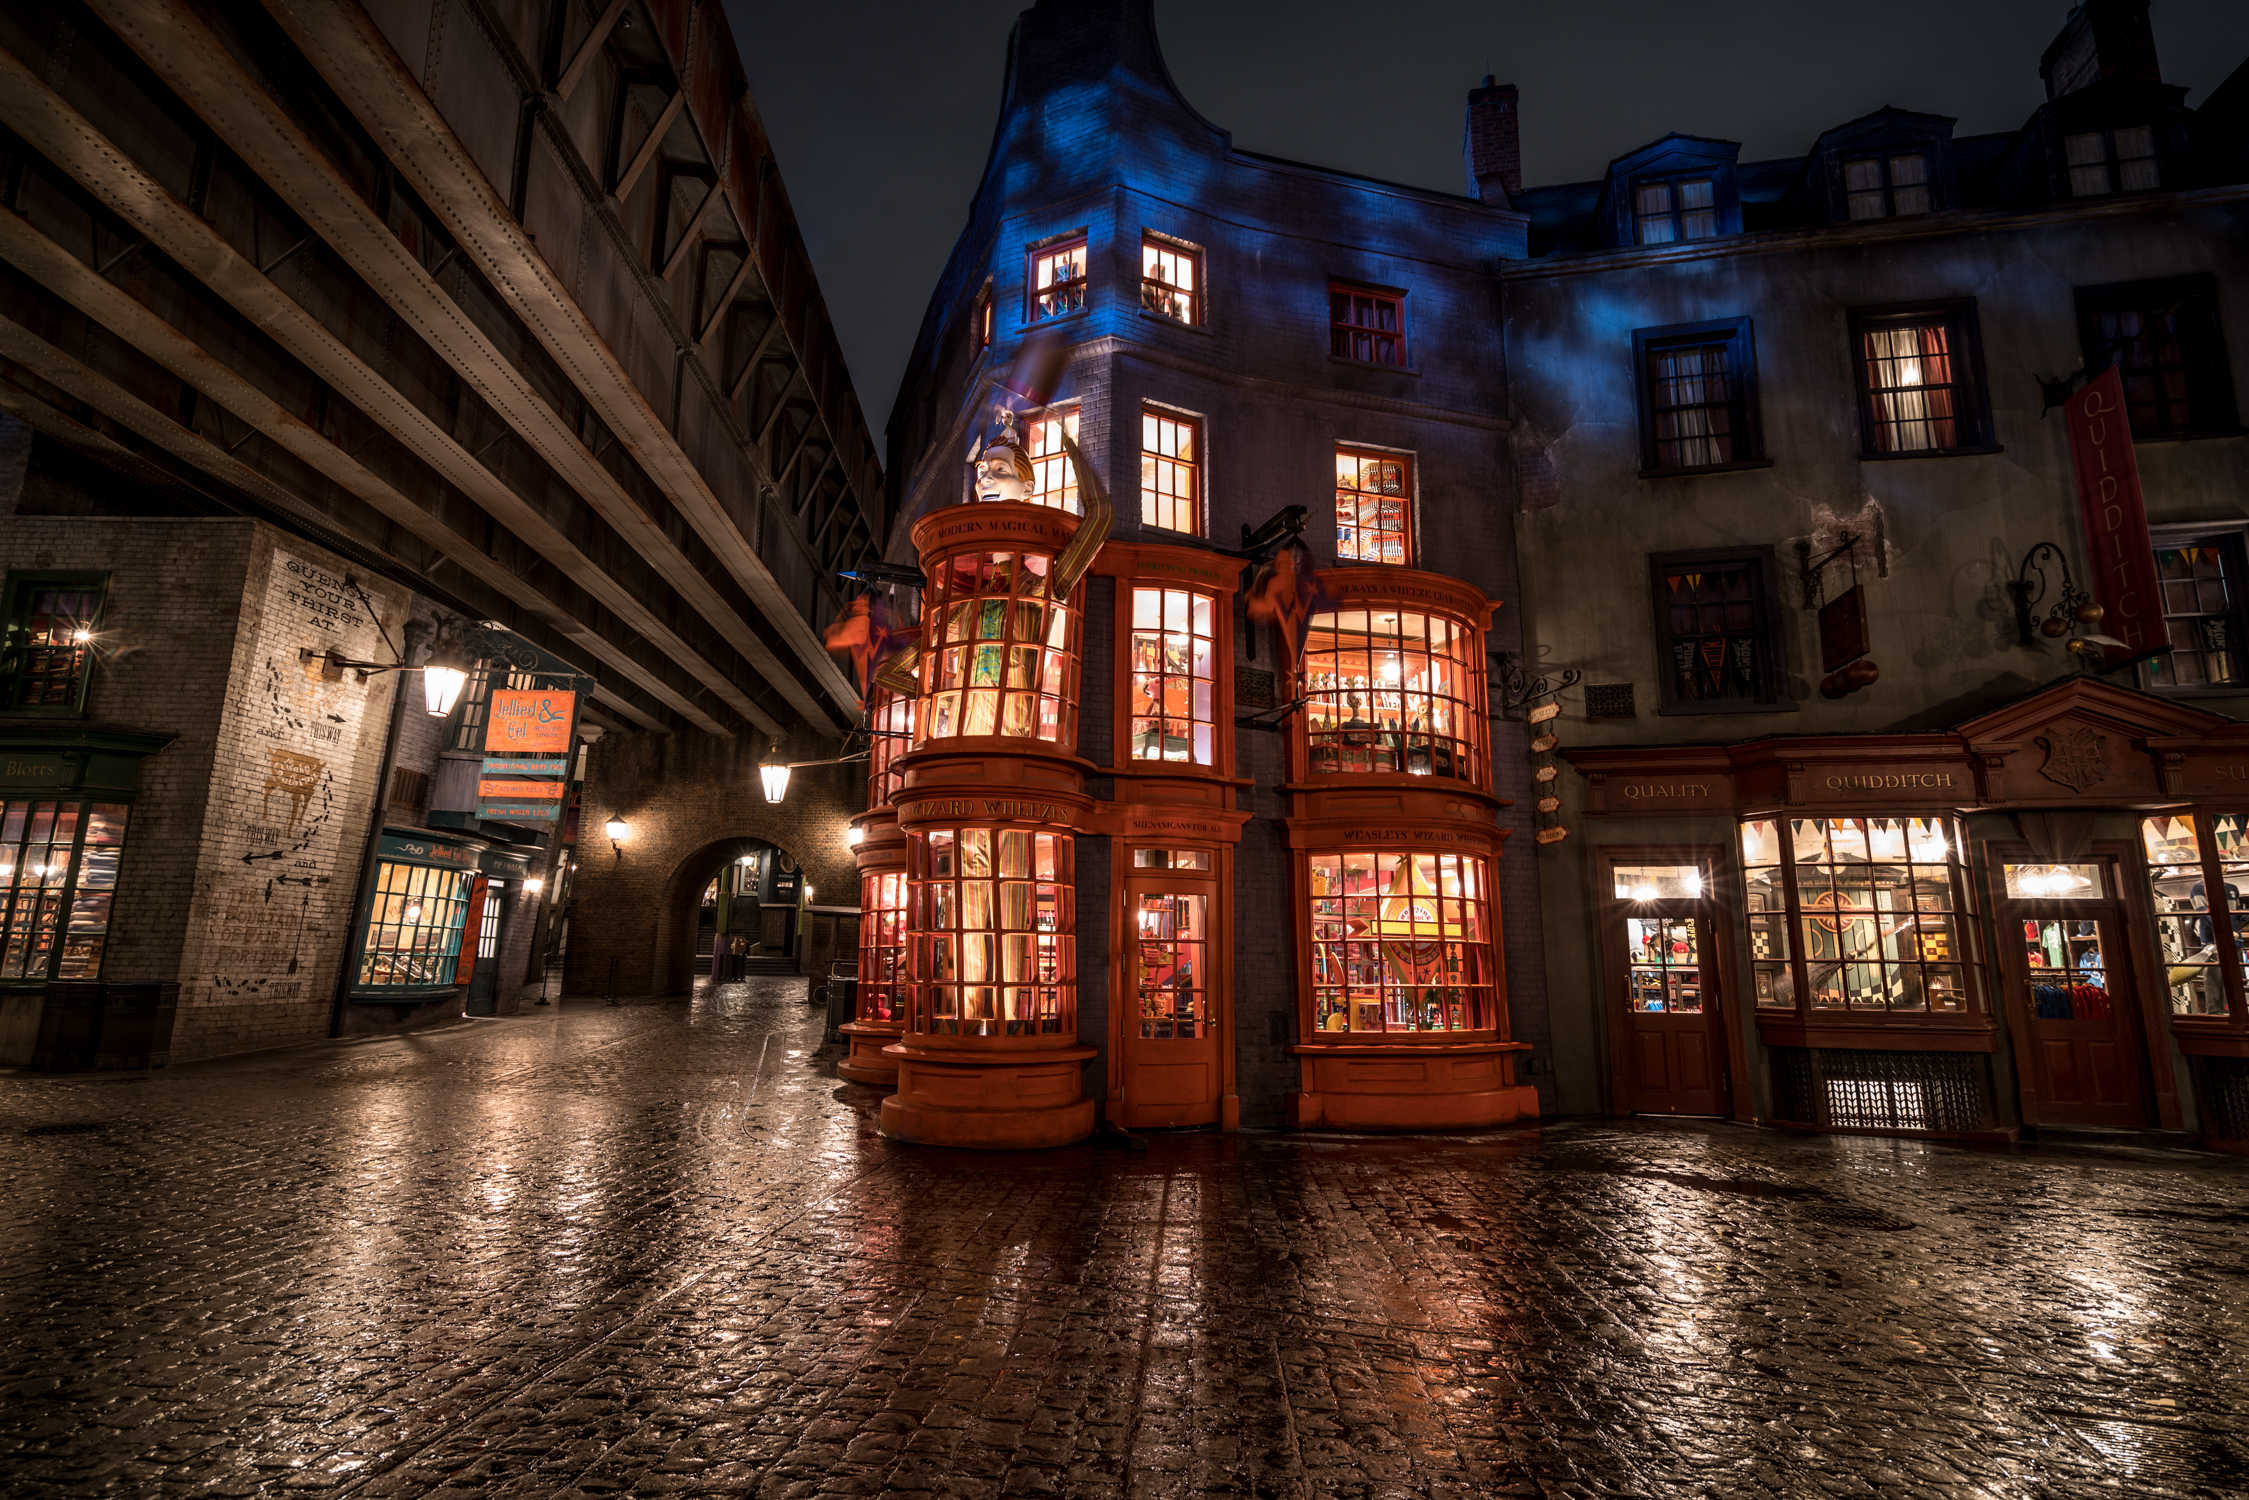 Los 5 mejores artículos de Weasley's Wizarding Wheezes en Diagon Alley en Universal Orlando